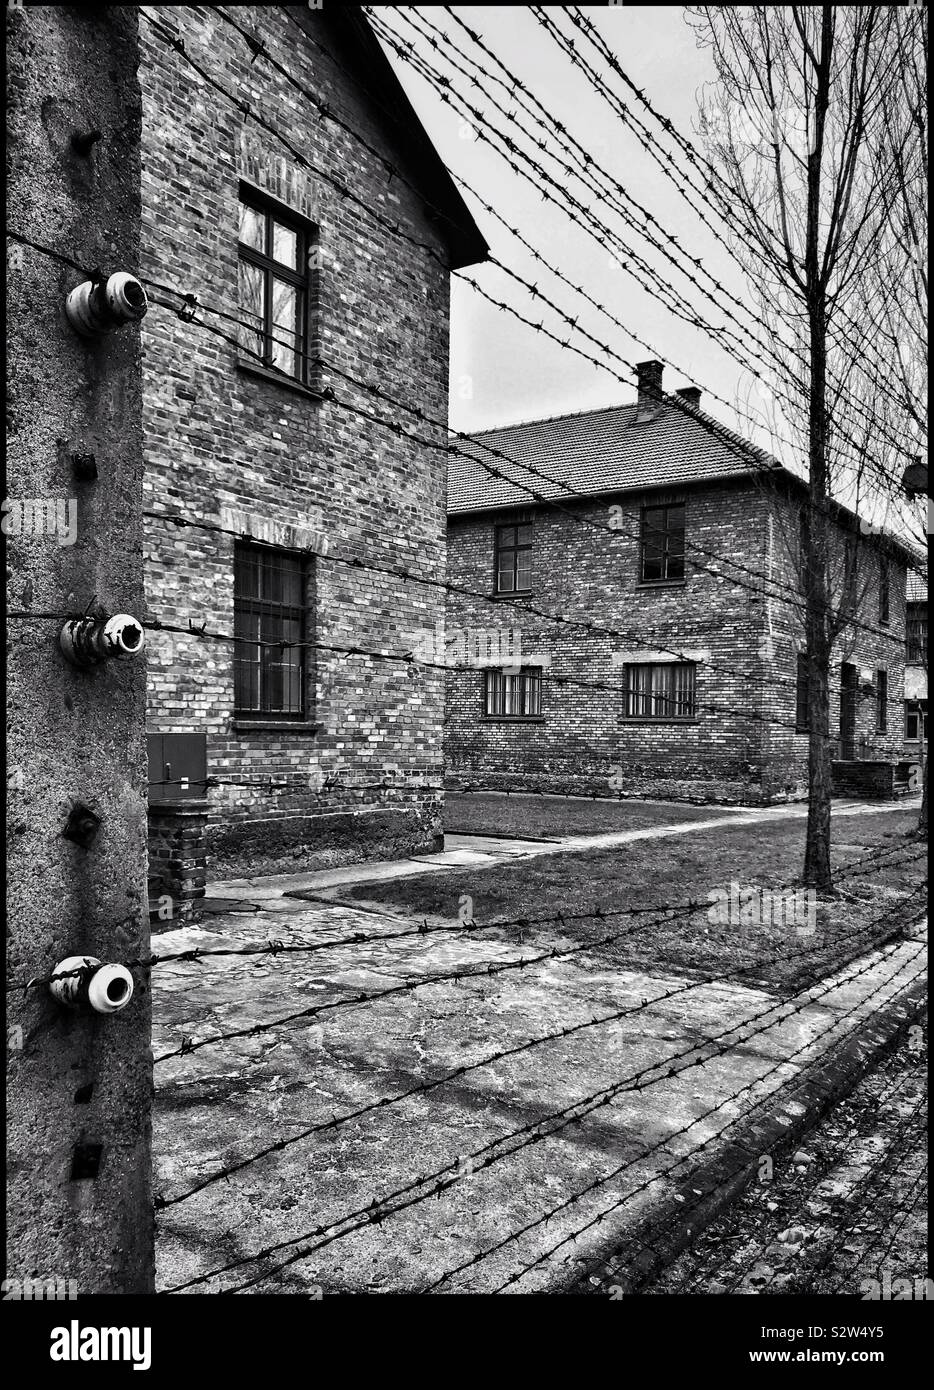 Una visualizzazione monocromatica di alcuni degli edifici al nazista di campo di concentramento di Auschwitz (nella città polacca di Oswiecim). Il elettrica e filo spinato scherma è chiaramente visibile. Foto © COLIN HOSKINS. Foto Stock